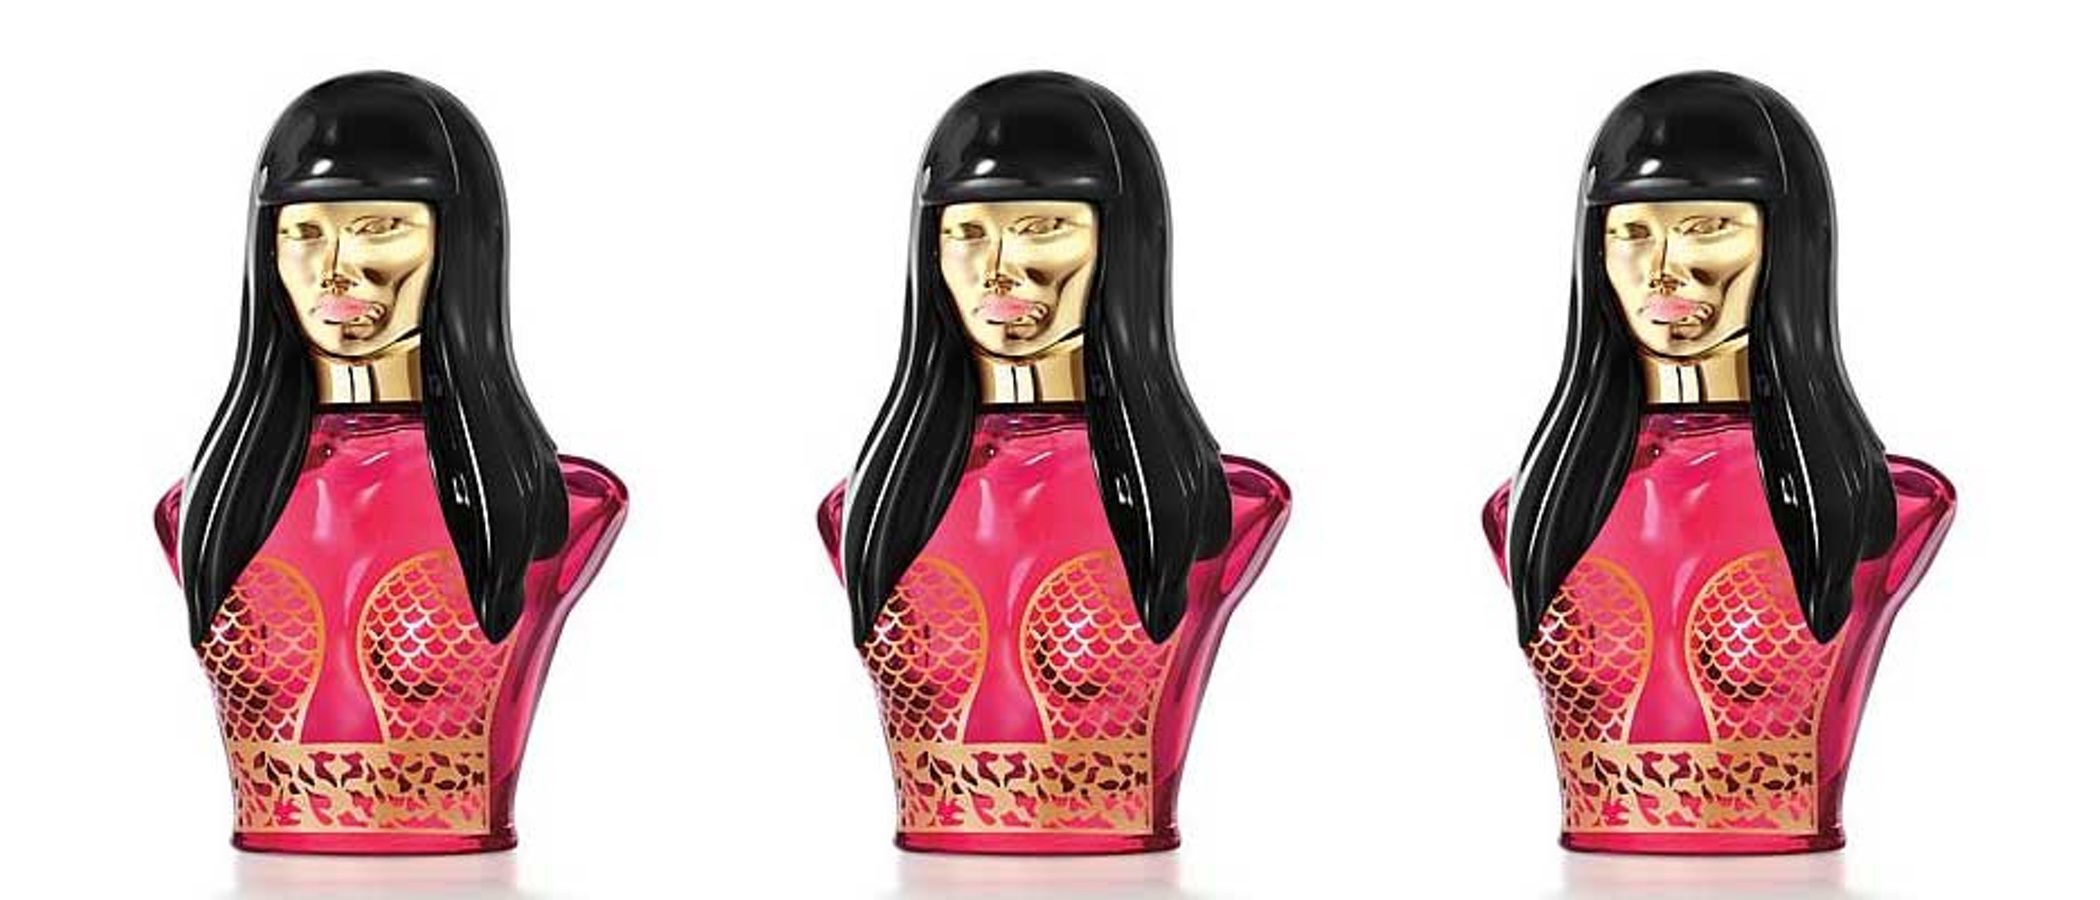 Nicki Minaj saca 'Trini Girl', su nuevo perfume inspirado en Trinidad y Tobago